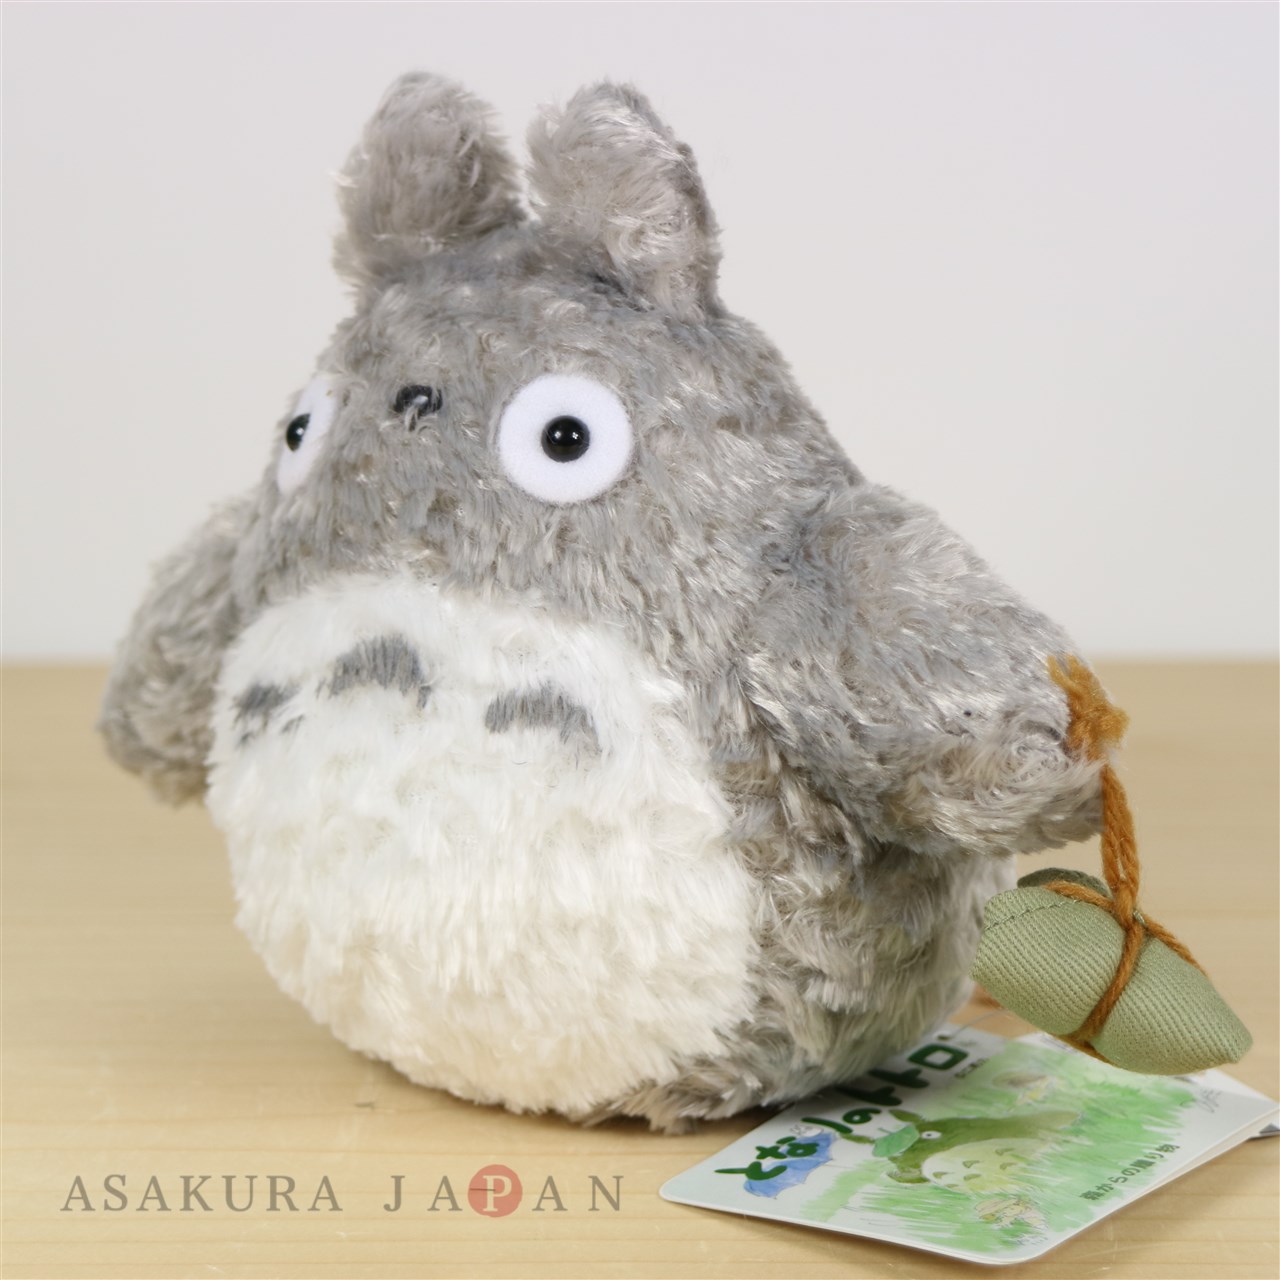 totoro stuffed animal